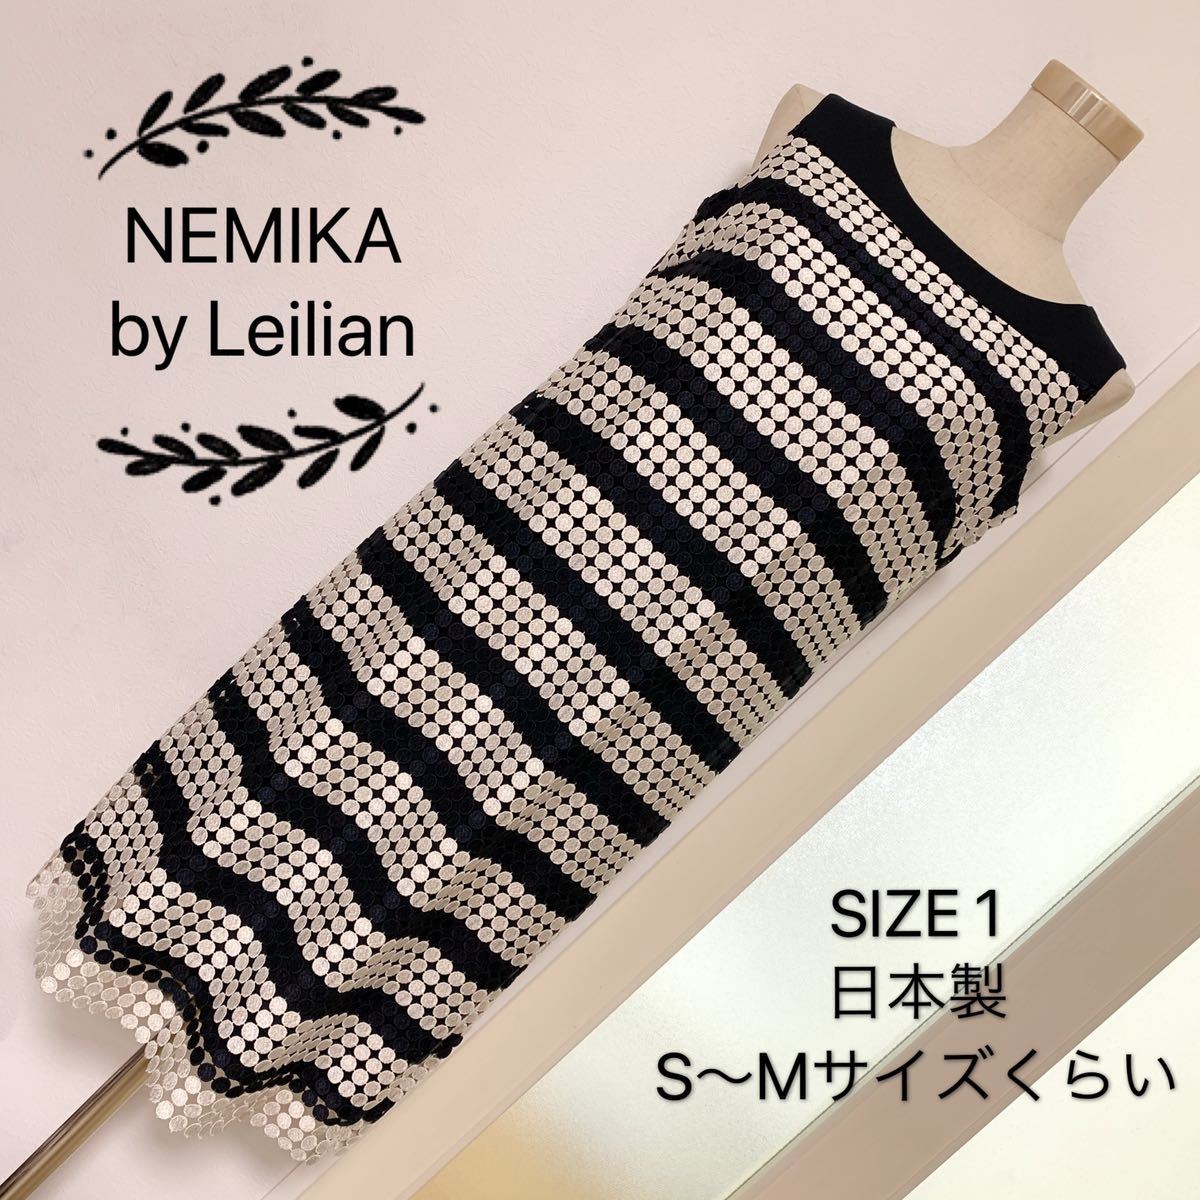 NEMIKA by Leilian レース ノースリーブ ワンピース 大きめドット柄